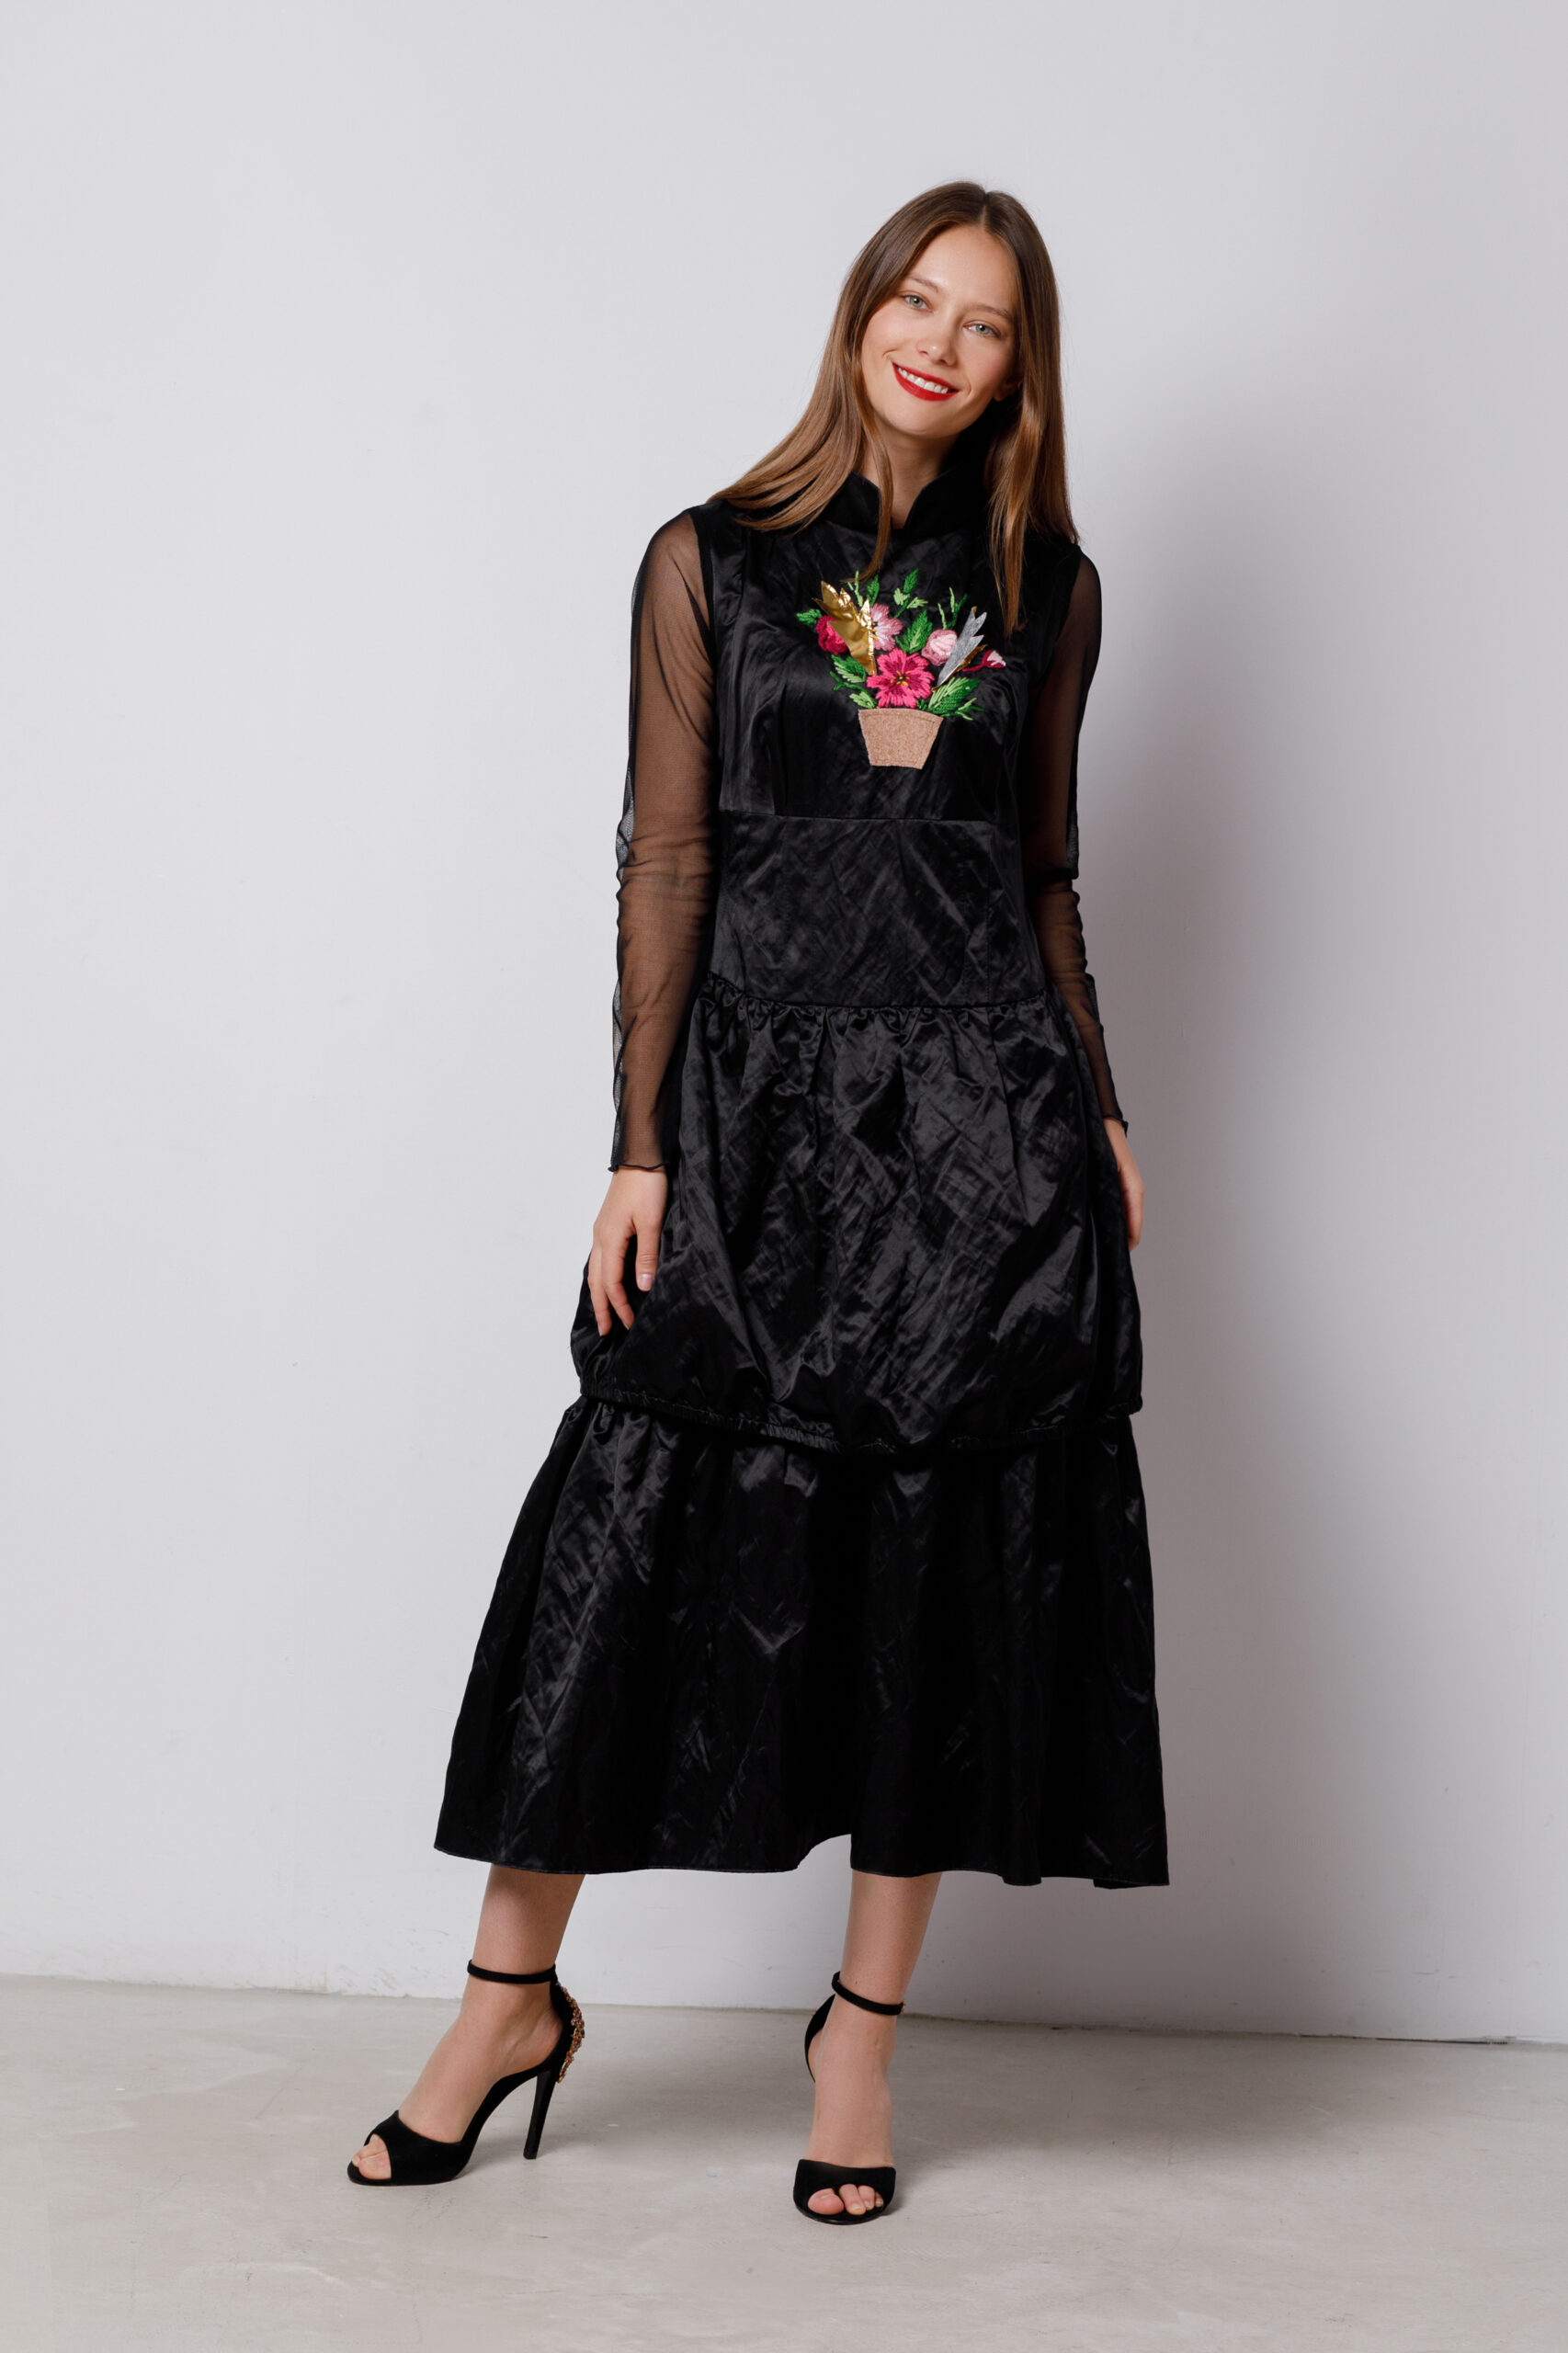 Rochie AVENA eleganta din satin negru cu broderie florala. Materiale naturale, design unicat, cu broderie si aplicatii handmade